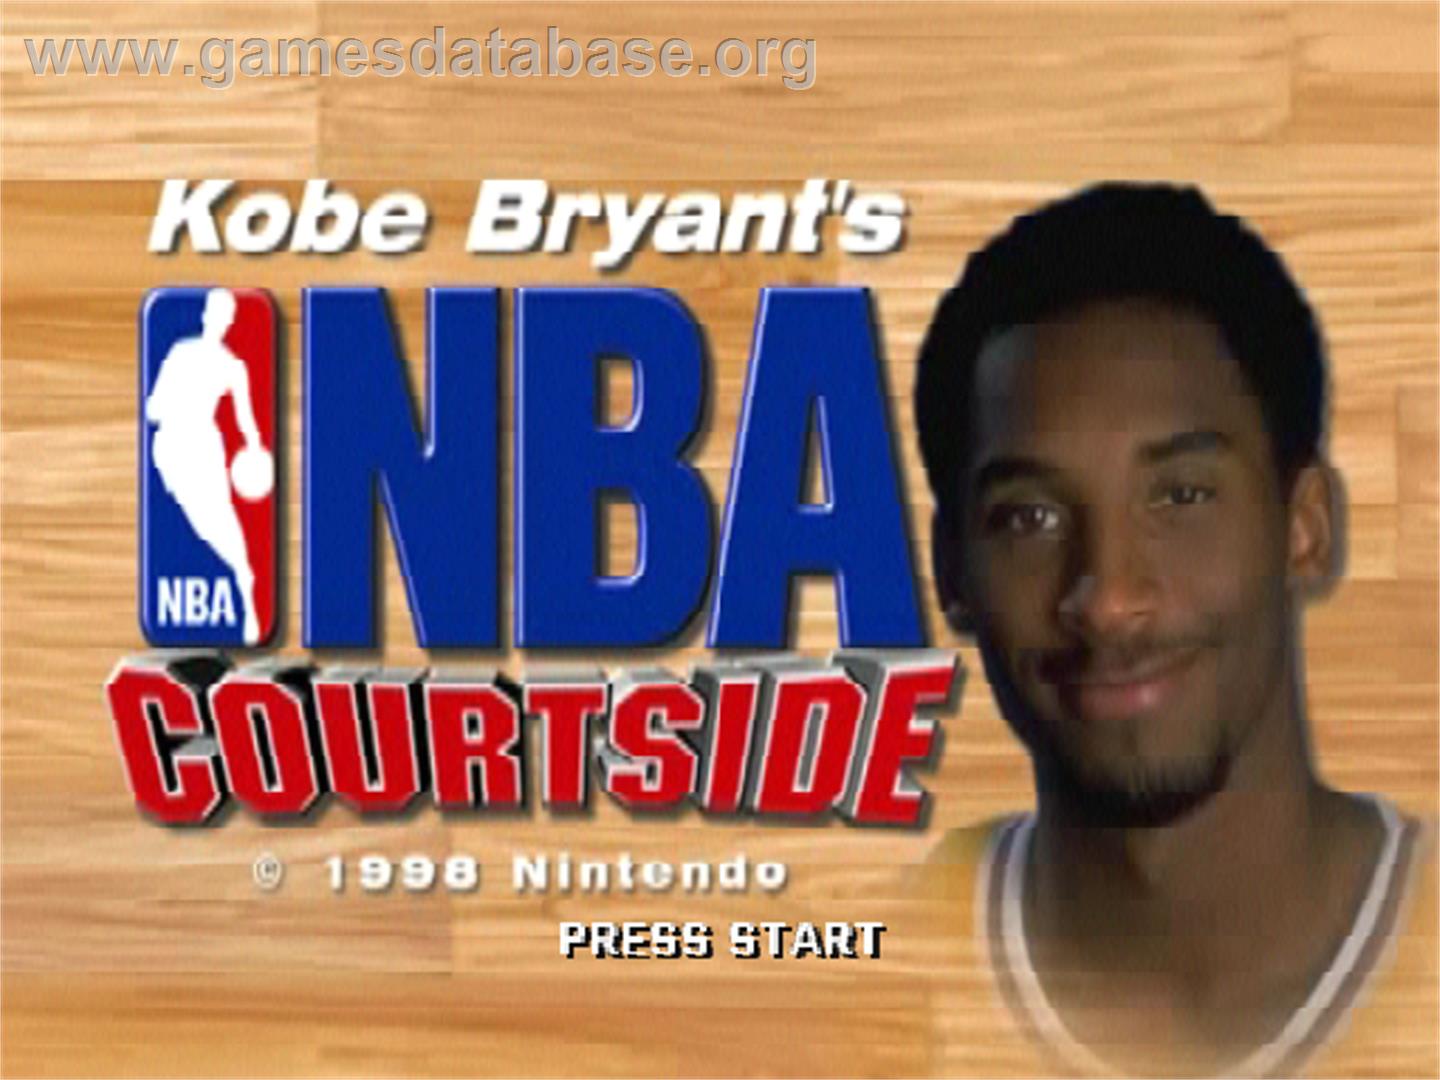 Kobe Bryant's NBA Courtside - Nintendo N64 - Artwork - Title Screen